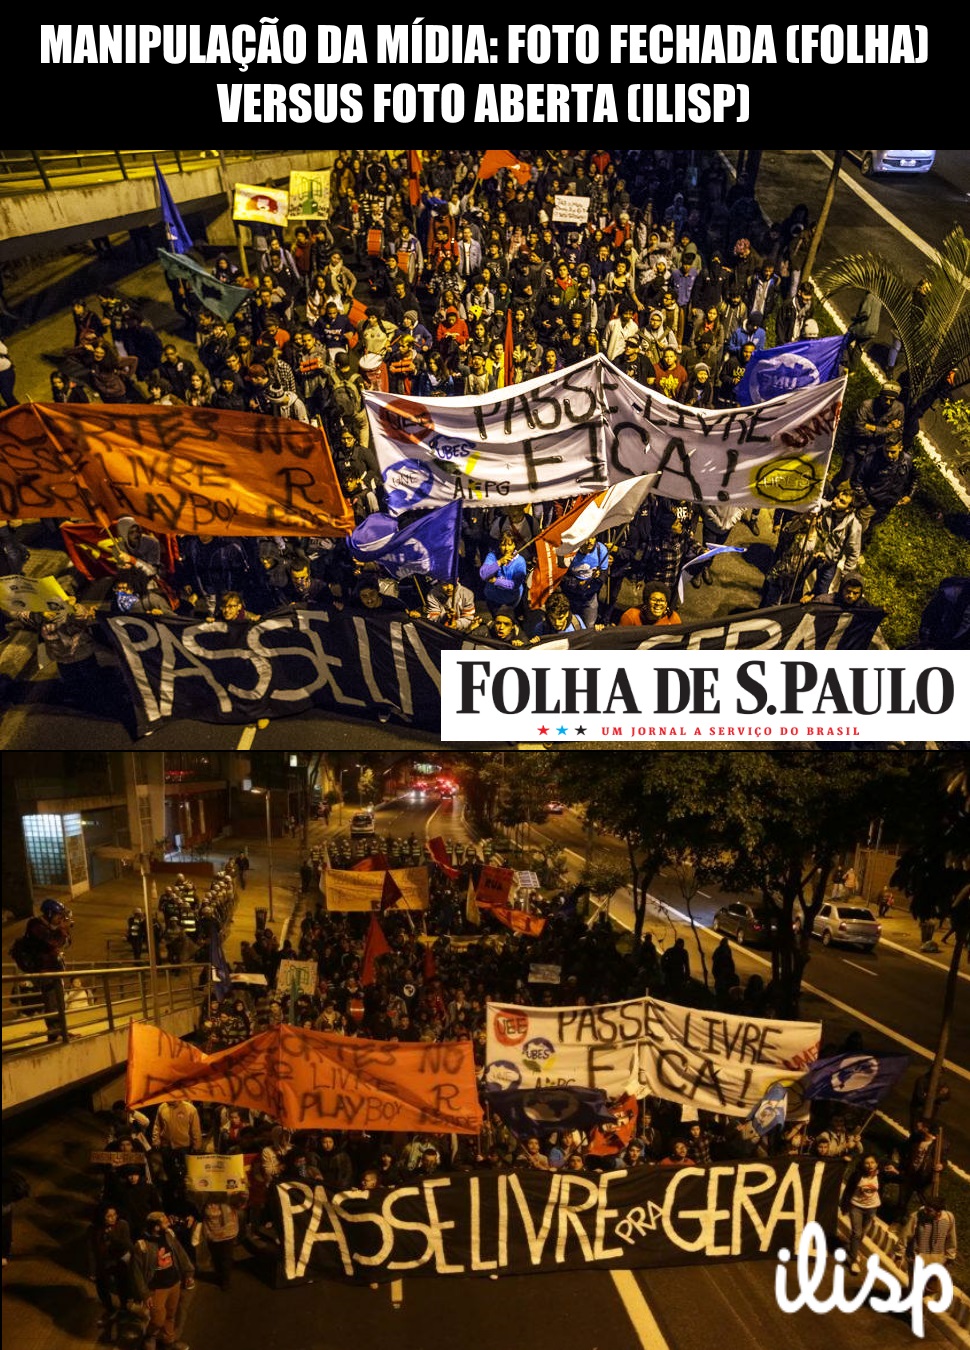 Manipulação da mídia: note como a Folha cortou a parte superior da foto, onde está a corrente policial e a rua vazia, para aparentar que há um maior número de pessoas